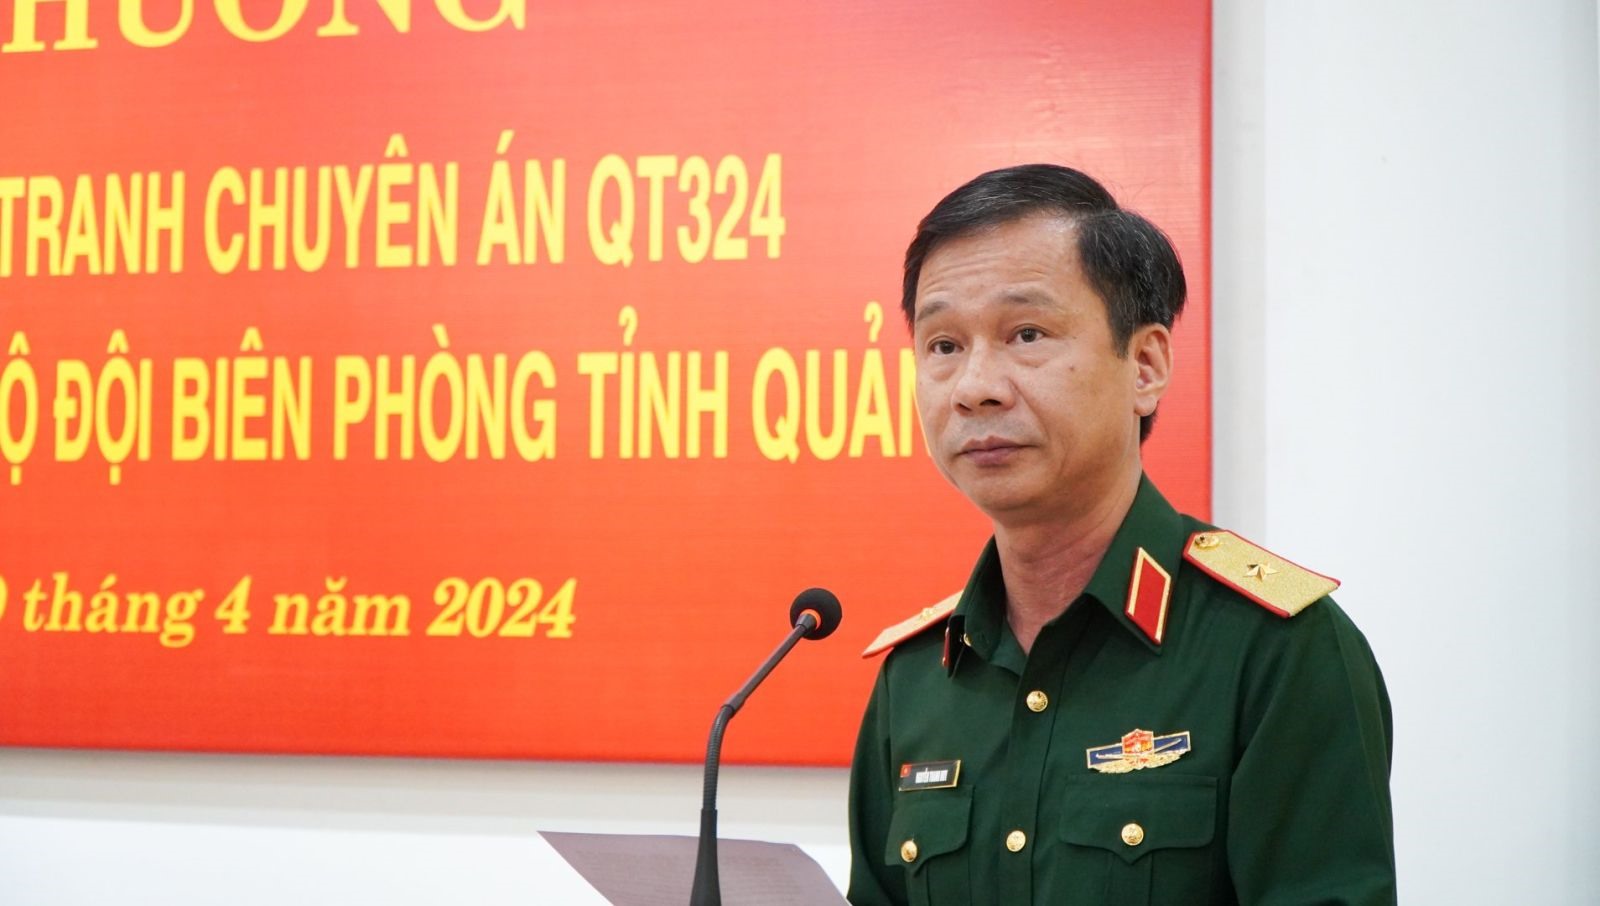 Thiếu tướng Nguyễn Thanh Huy - Cục trưởng Cục Điều tra hình sự BQP - Phó trưởng Ban Chỉ đạo 1389 BQP phát biểu chỉ đạo